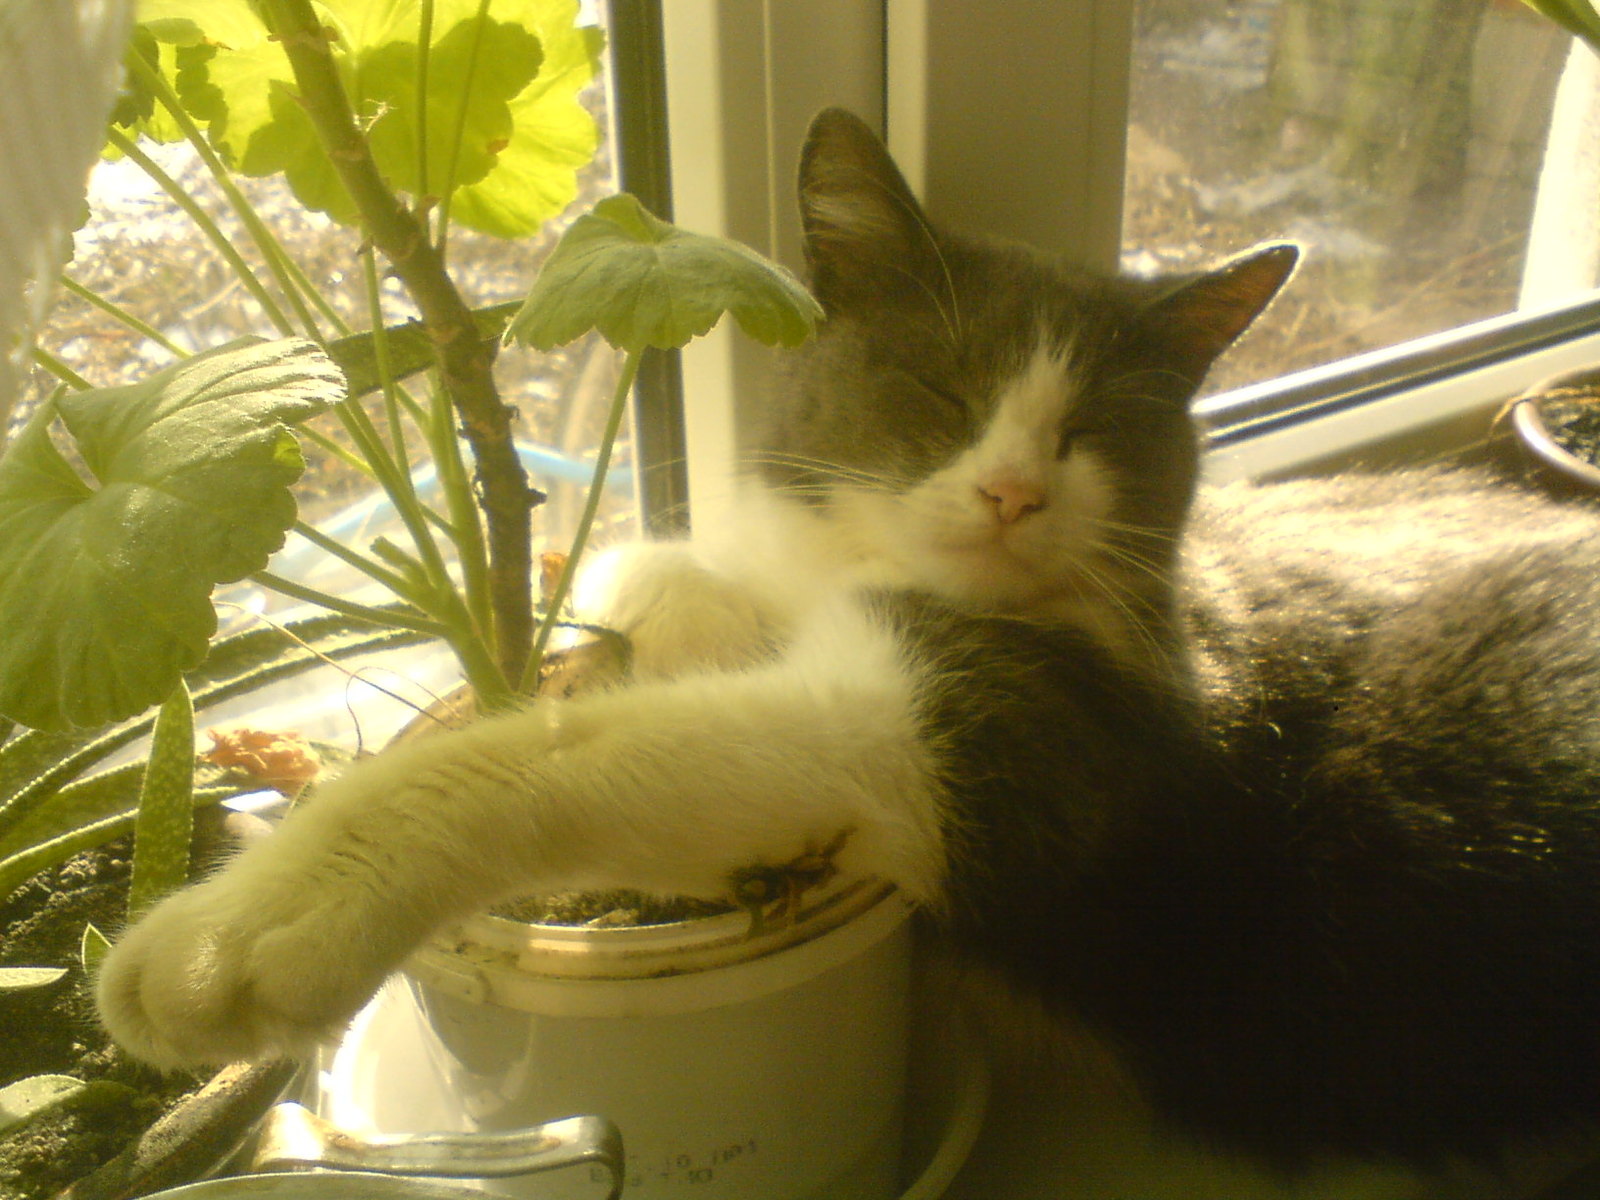 The cat sleeps on a flower pot - My, cat, Dream, Flowers, Flower pot, 